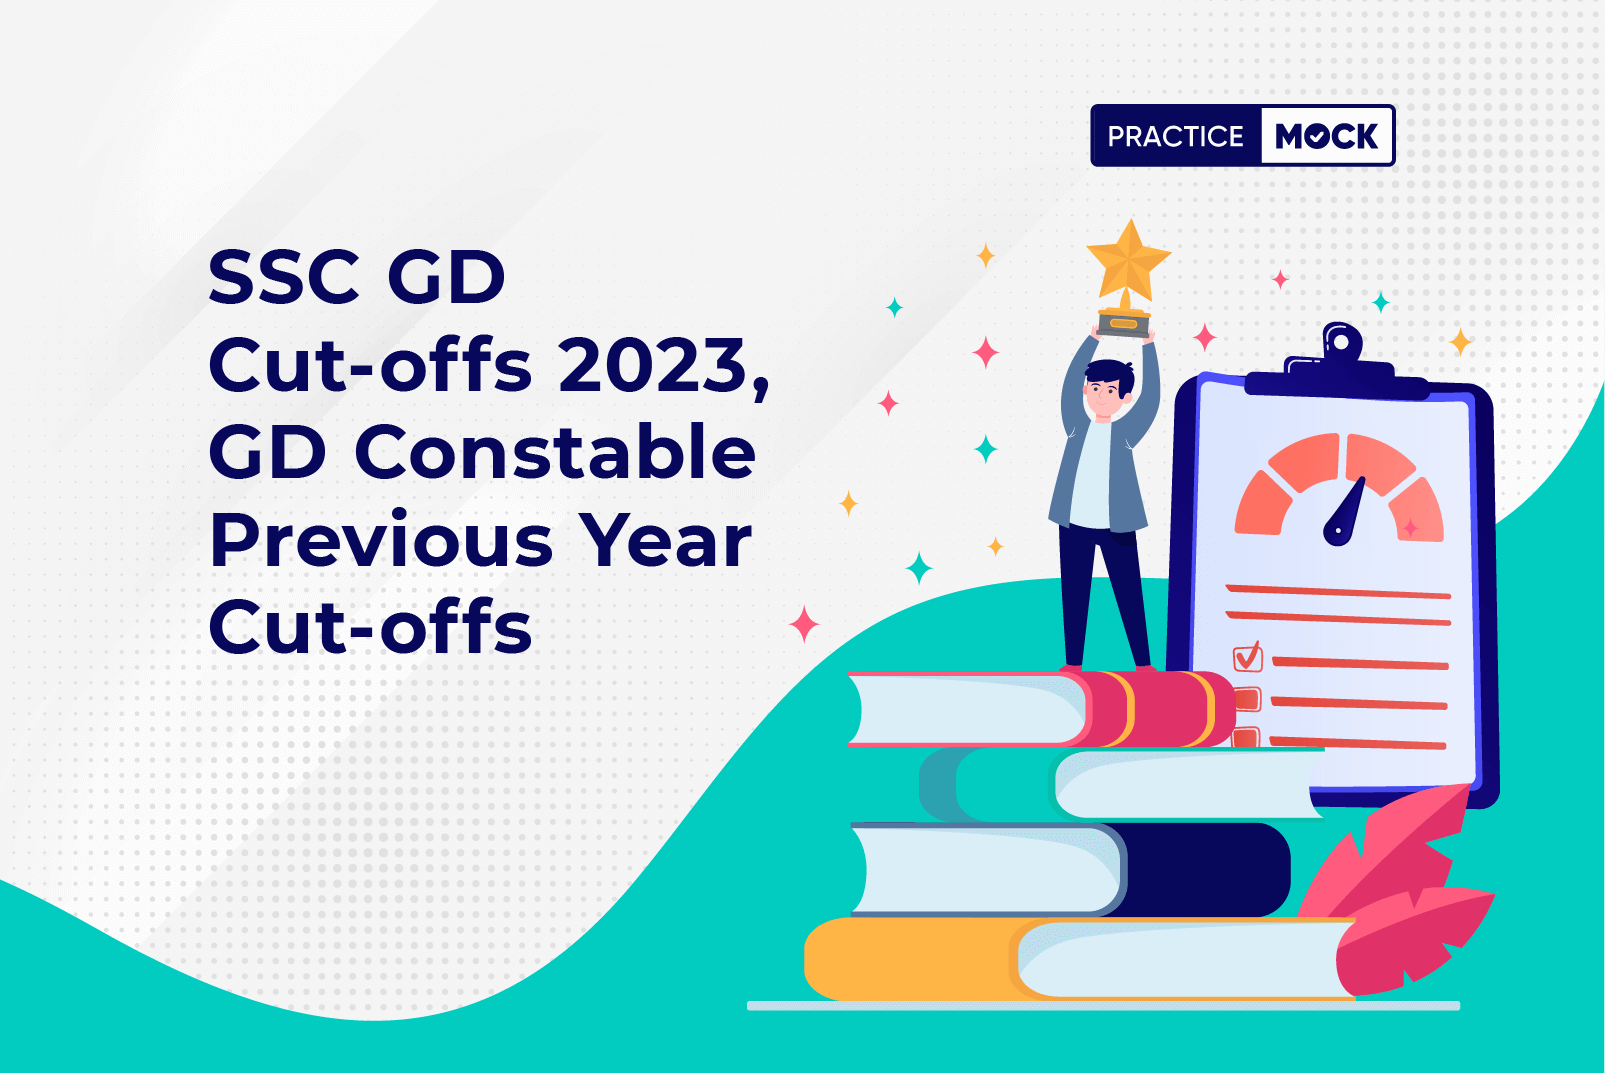 SSC GD Cut-offs 2023, GD Constable Previous Year Cut-offs